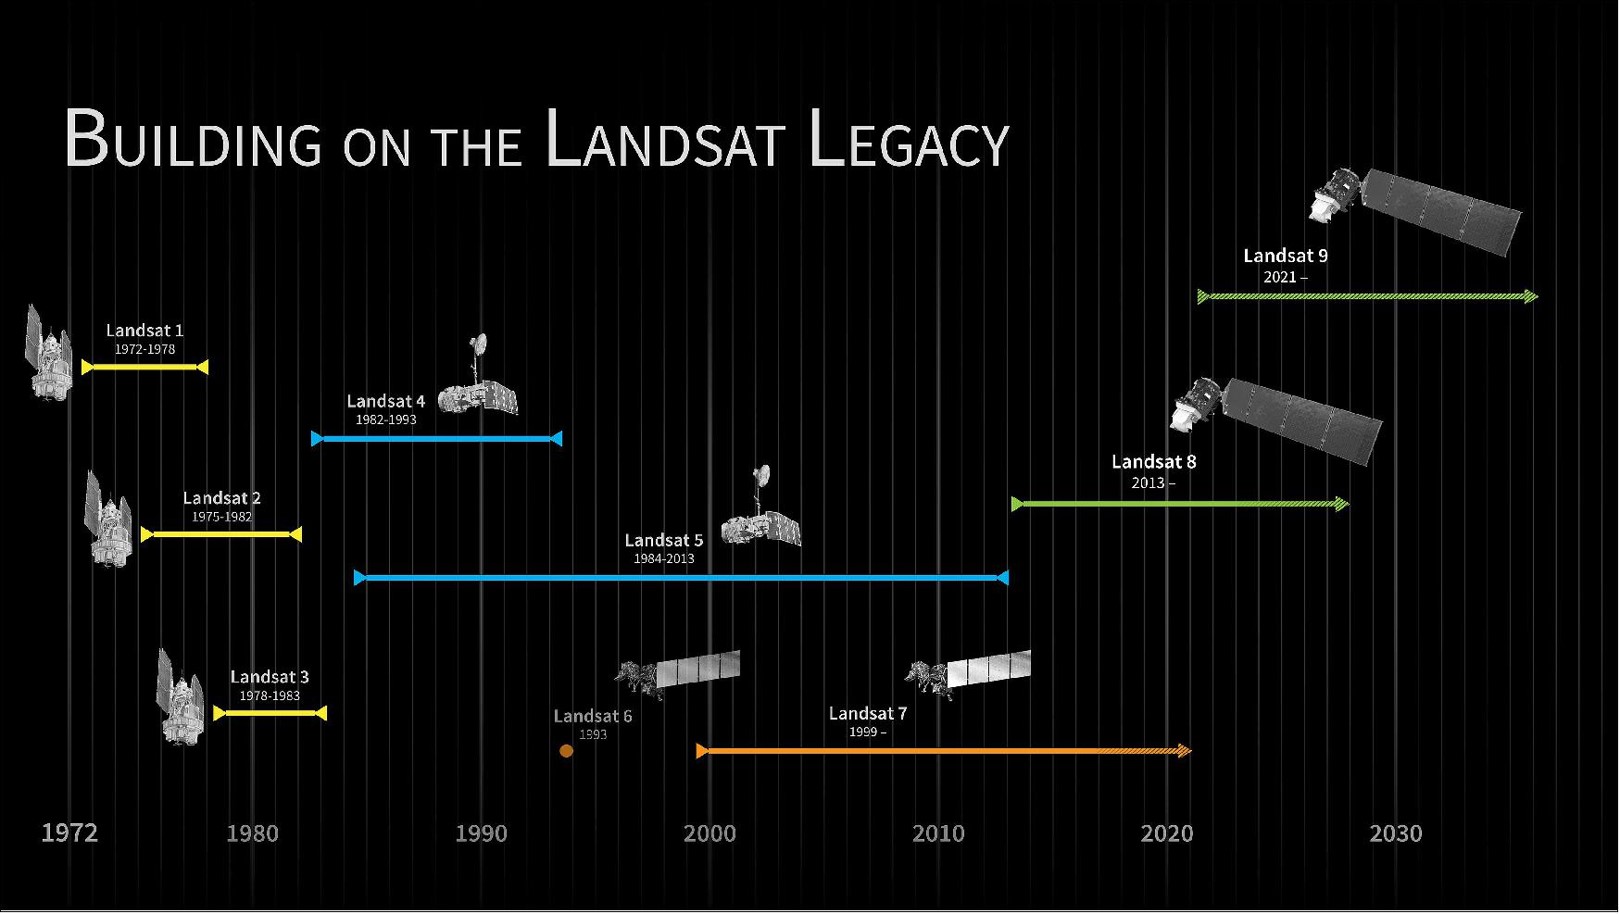 Landsat missions timeline